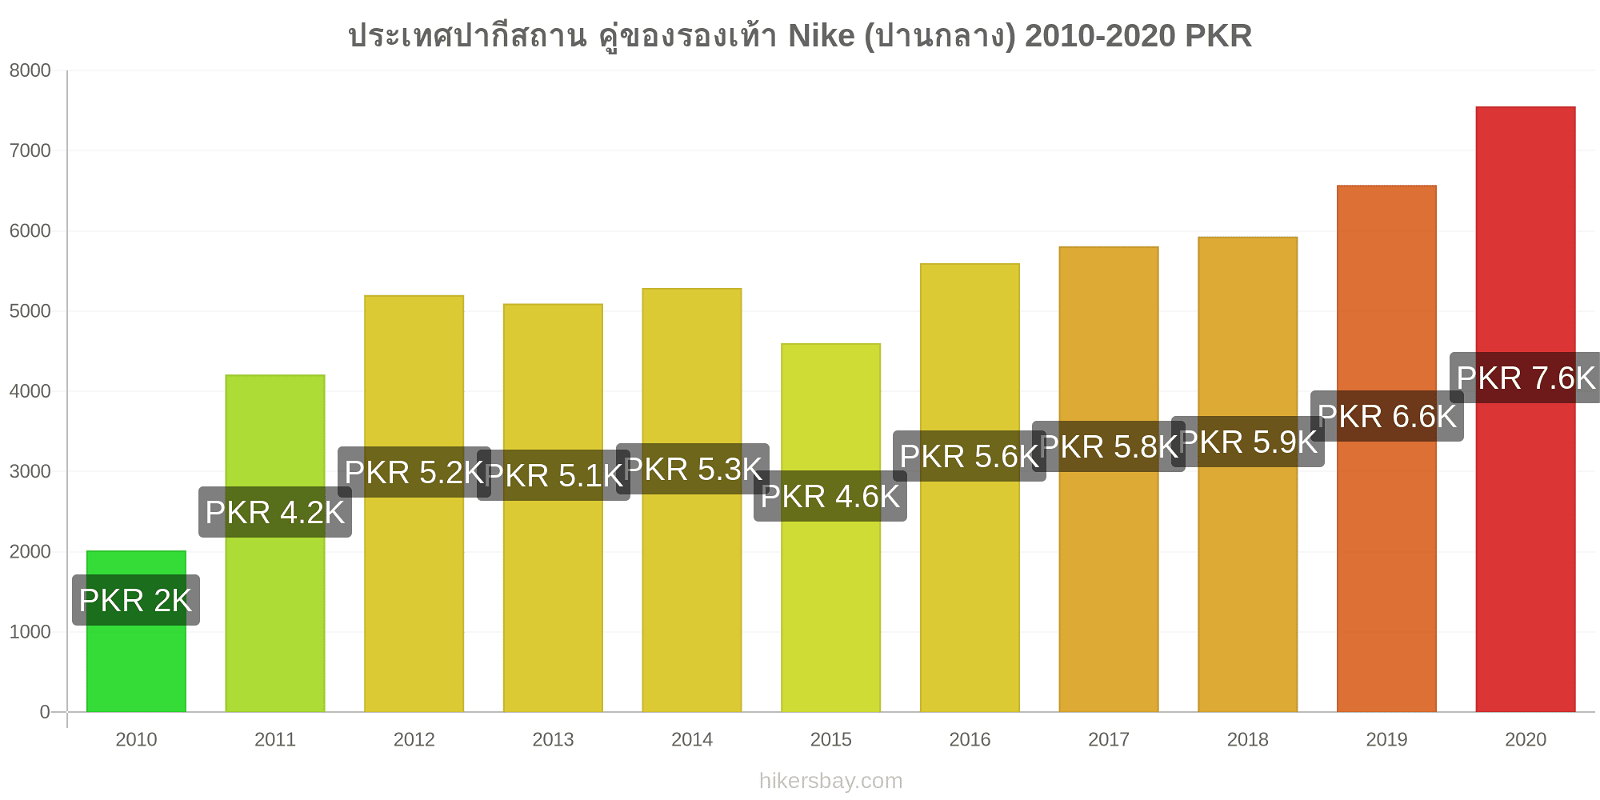 ประเทศปากีสถาน การเปลี่ยนแปลงราคา คู่ของรองเท้า Nike (ปานกลาง) hikersbay.com